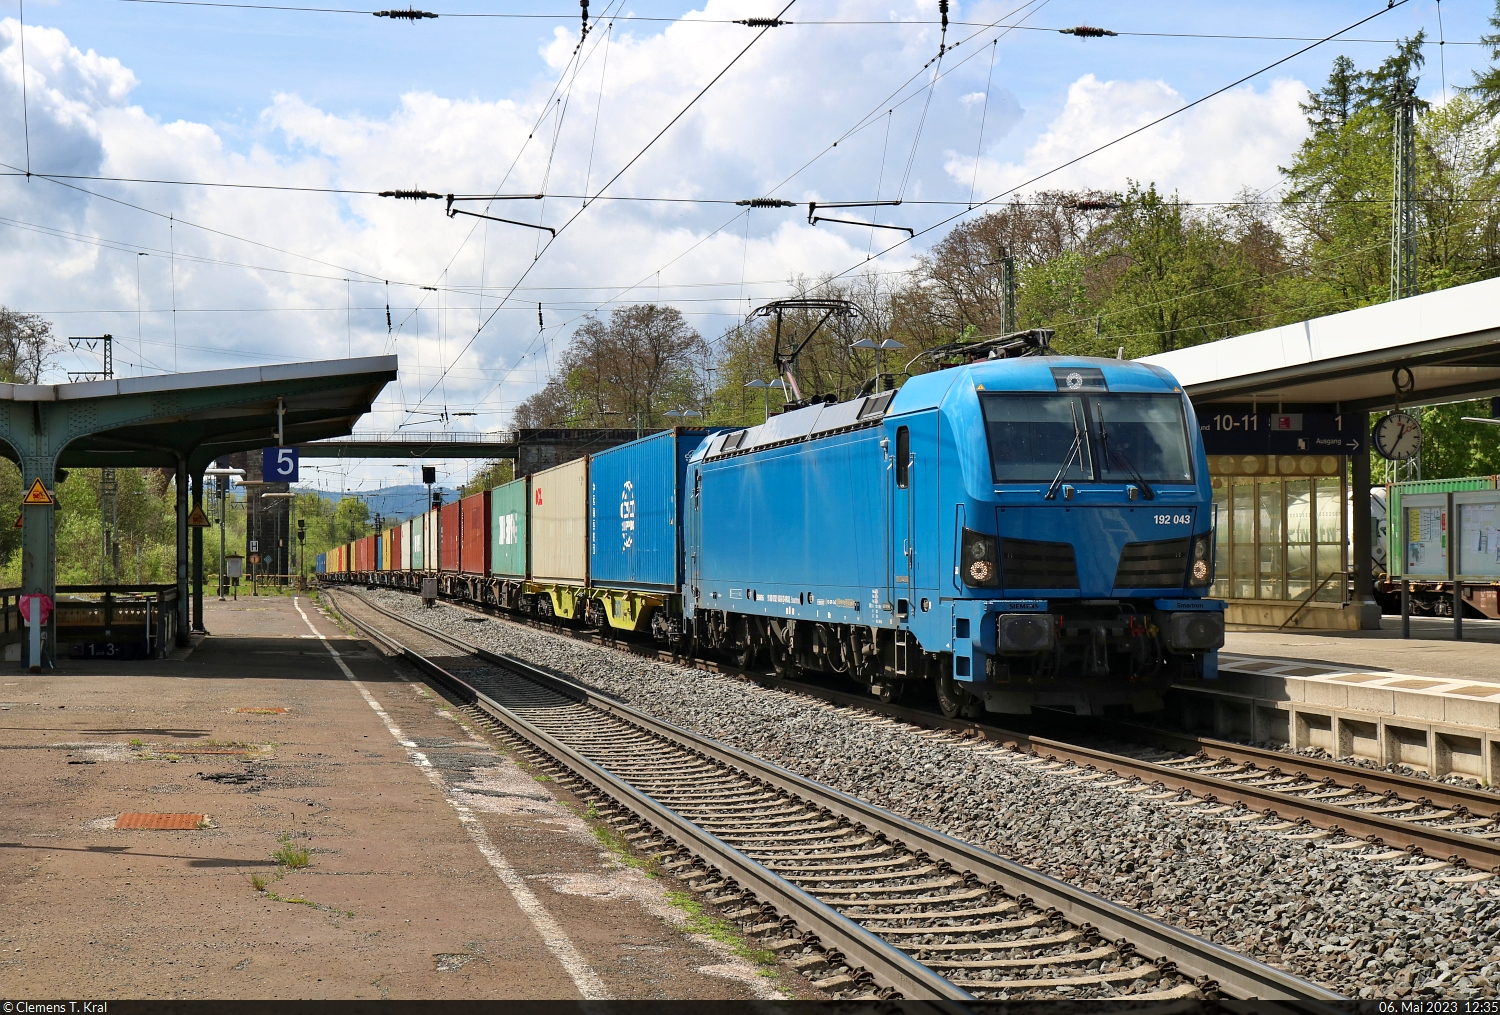 Schnell musste in Eichenberg der Bahnsteig gewechselt werden, um 192 043-8 (Siemens Smartron) mit ihren Kisten Richtung Göttingen noch aufnehmen zu können. Der Zug kam über Gleis 4.

🧰 RIVE Rail Leasing Limited (RRL), eingestellt bei der northrail GmbH, aktueller Mieter unbekannt
🕓 6.5.2023 | 12:35 Uhr